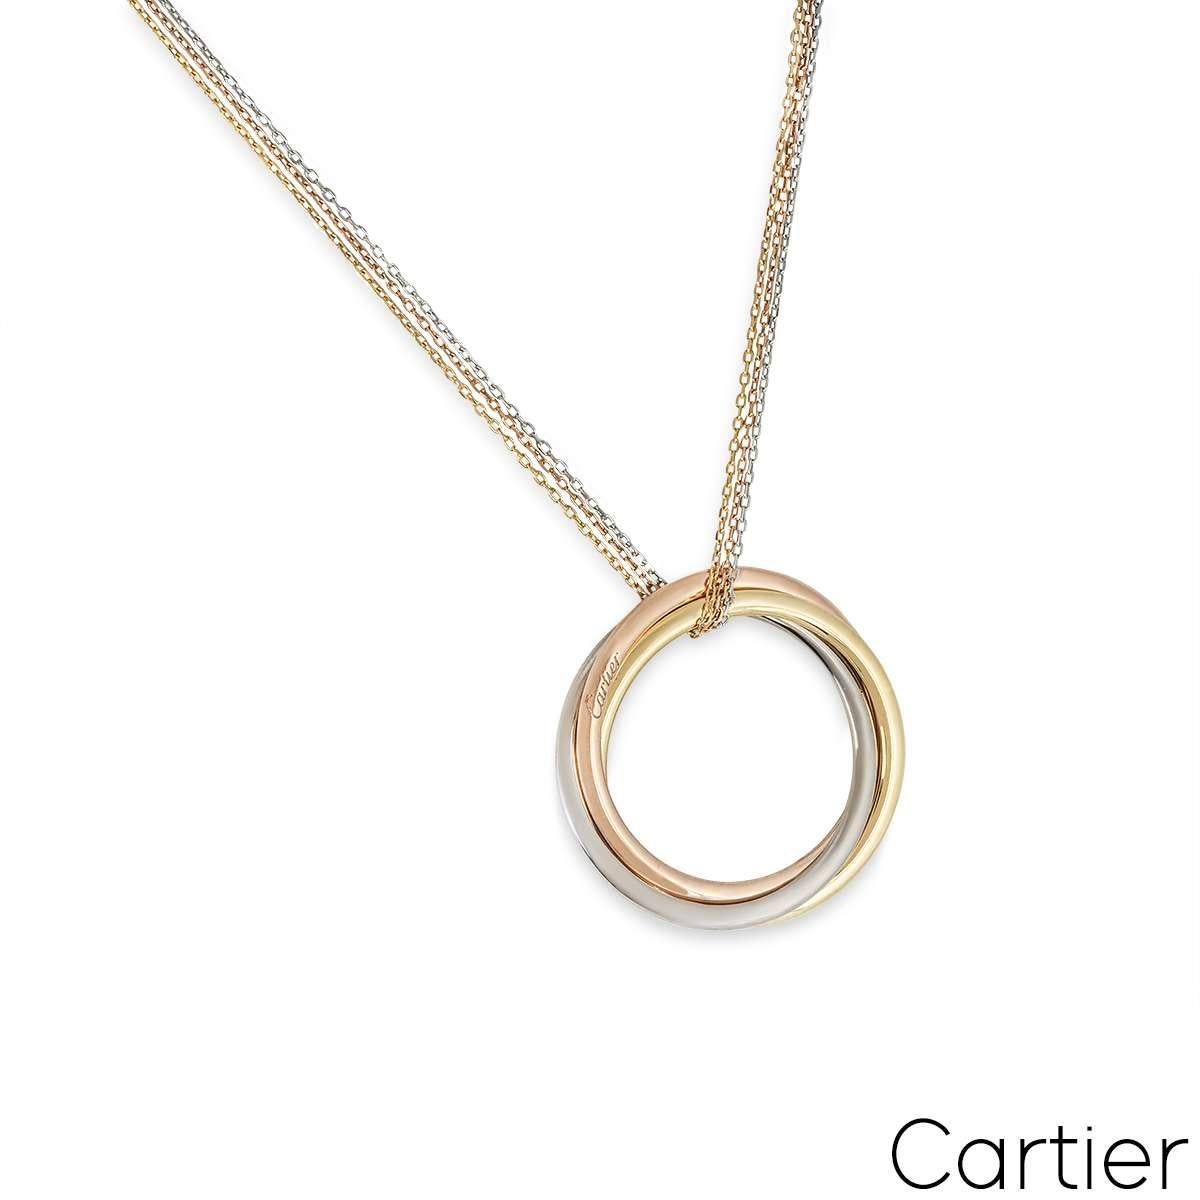 Un séduisant grand collier en or tricolore 18 carats de Cartier, issu de la collection Trinity De Cartier. Le collier est composé de trois motifs circulaires ajourés entrelacés en or jaune, blanc et rose.  Les motifs ont un diamètre de 3,9 cm et